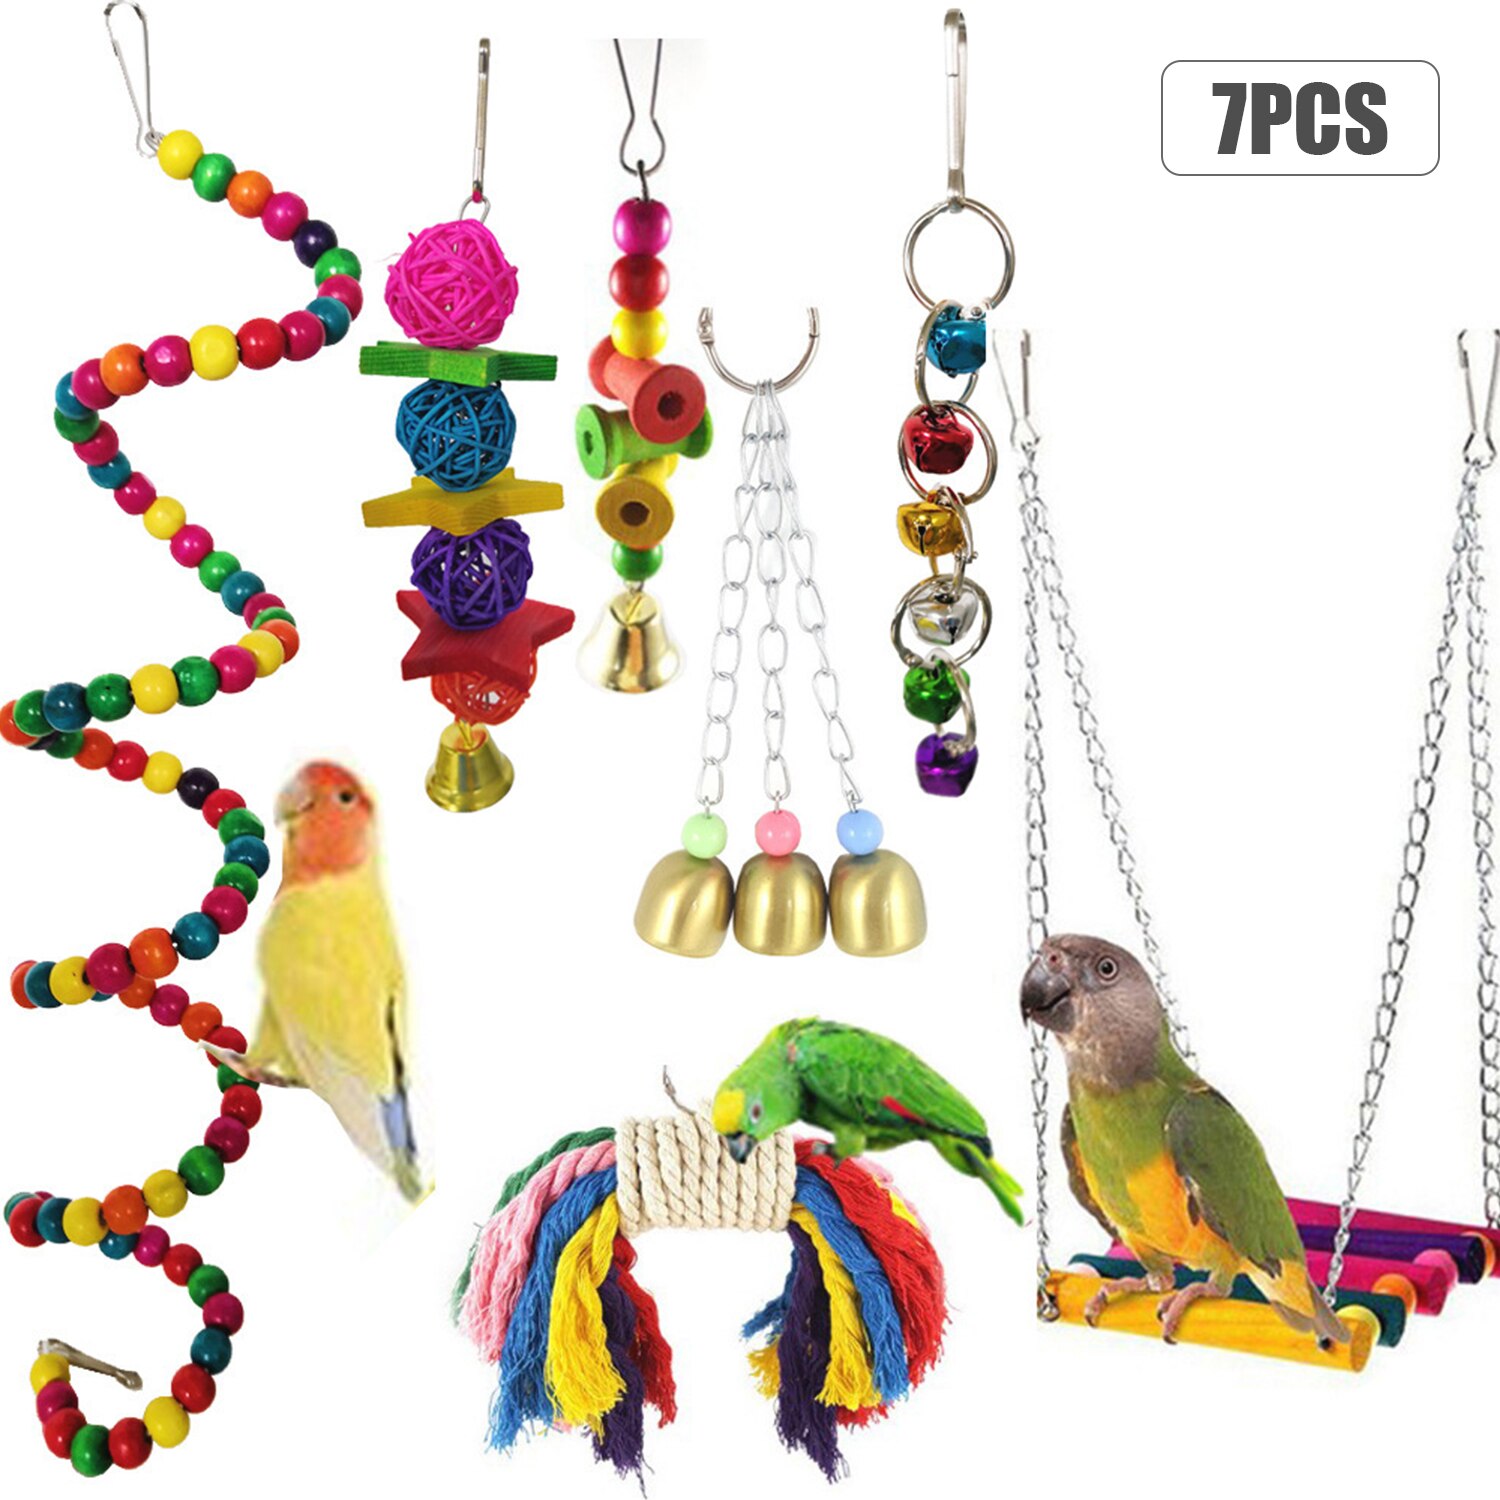 7Pcs Vogel Swing Kauwen Speelgoed Papegaaien Kauwen Opknoping Zitstokken Met Hangmat Bel Speelgoed Voor Papegaai Lorikeets Vogels